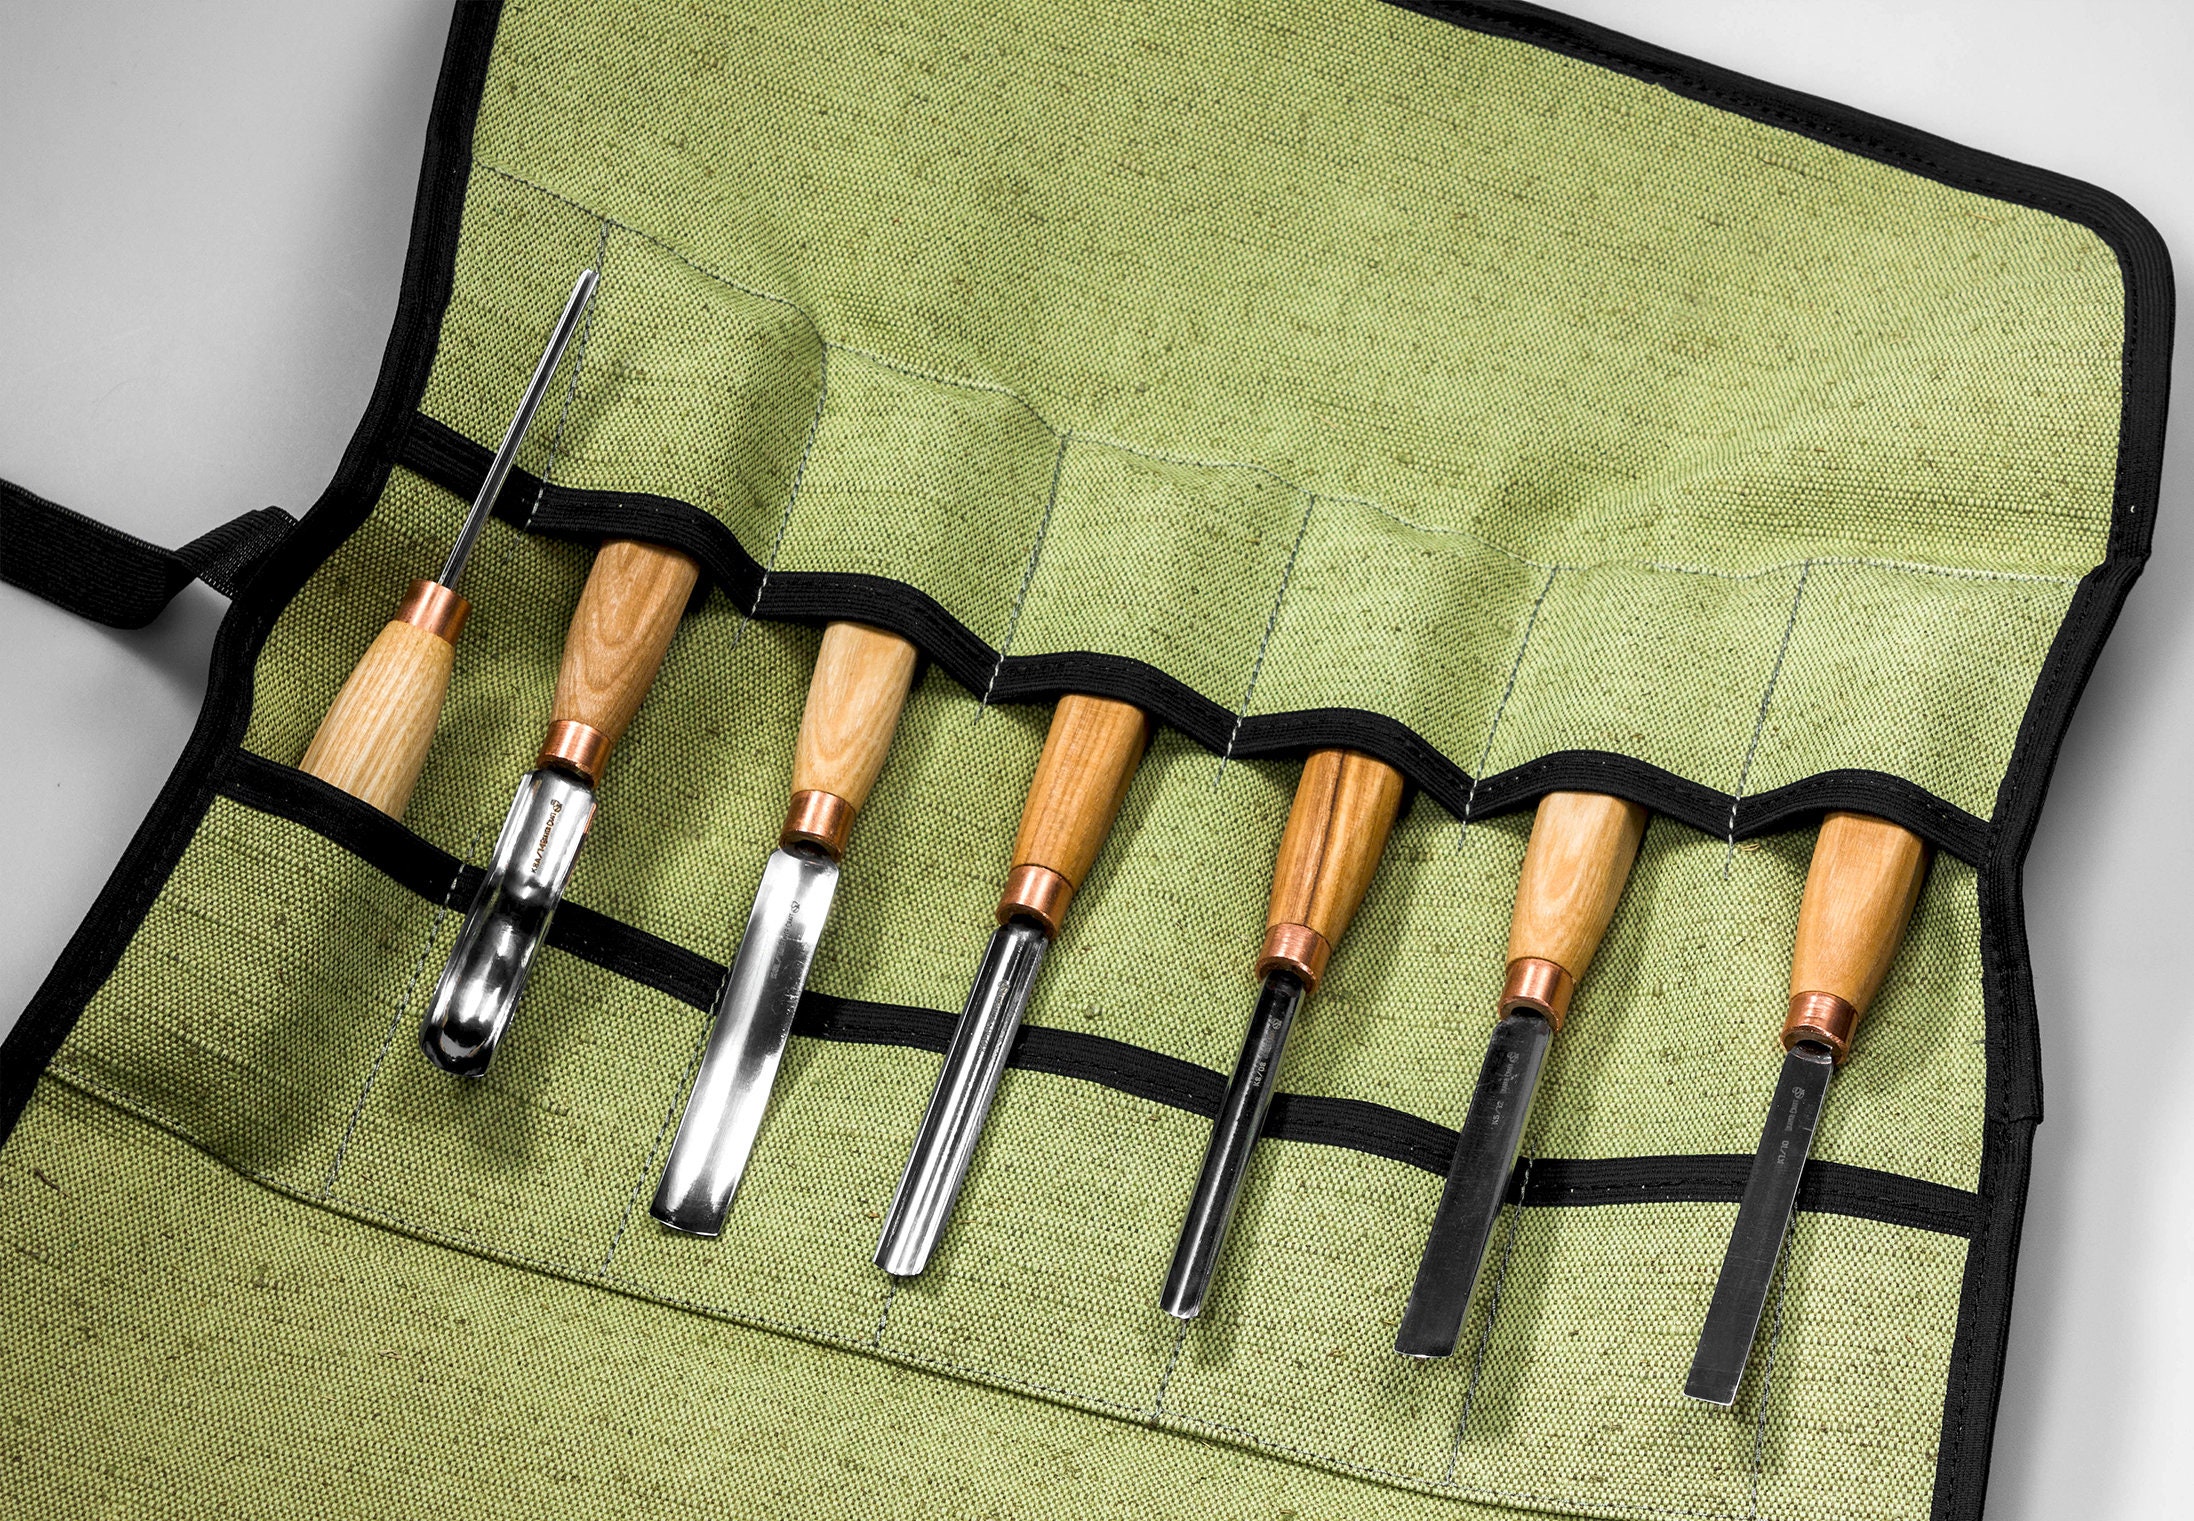 Juego de 6 cinceles de madera, herramientas para tallar madera, gubias y  cinceles, herramientas para esculpir la madera para principiantes